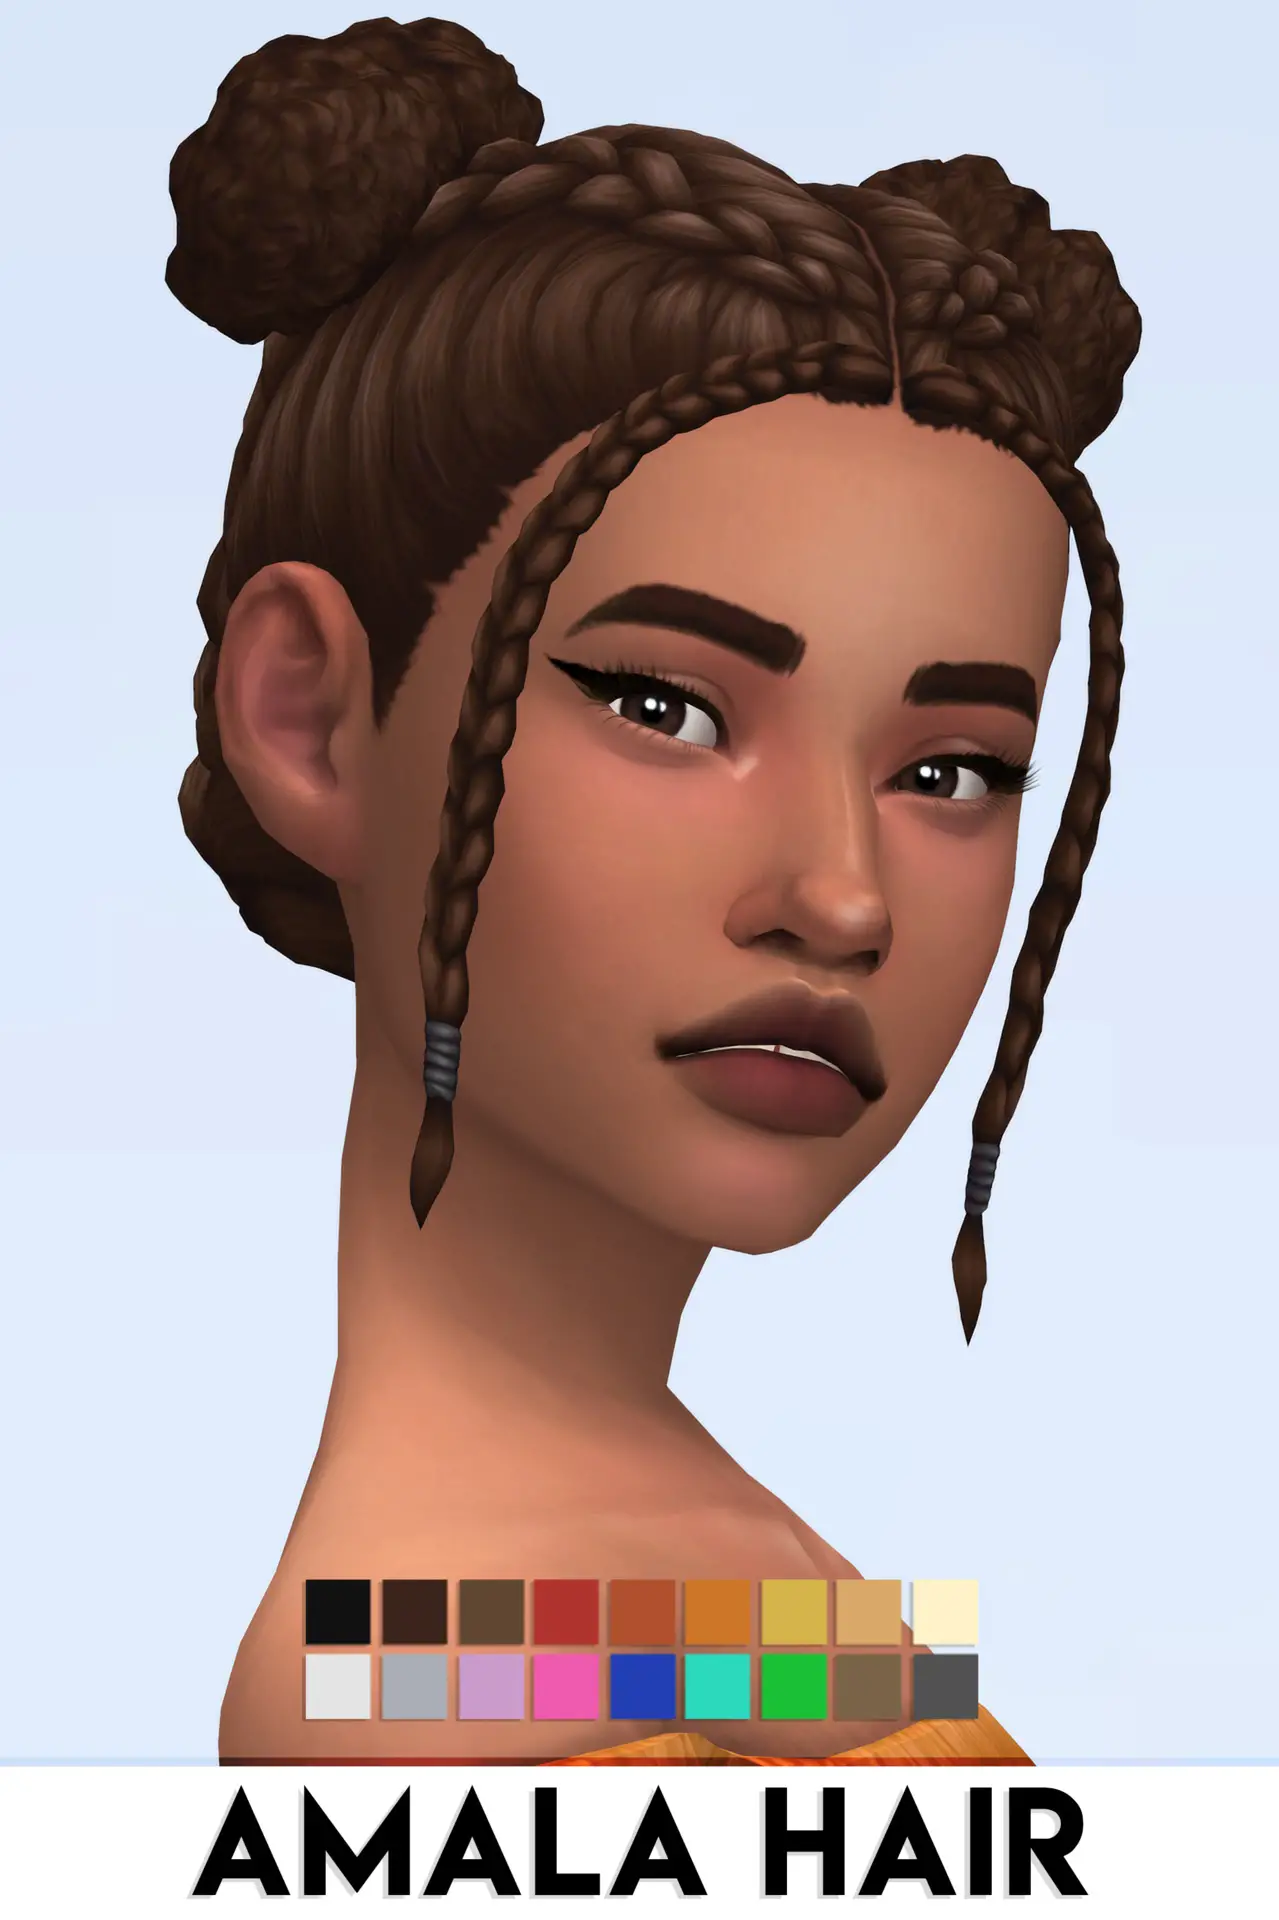 IMVikai: Amala Hair ~ Sims 4 Hairs